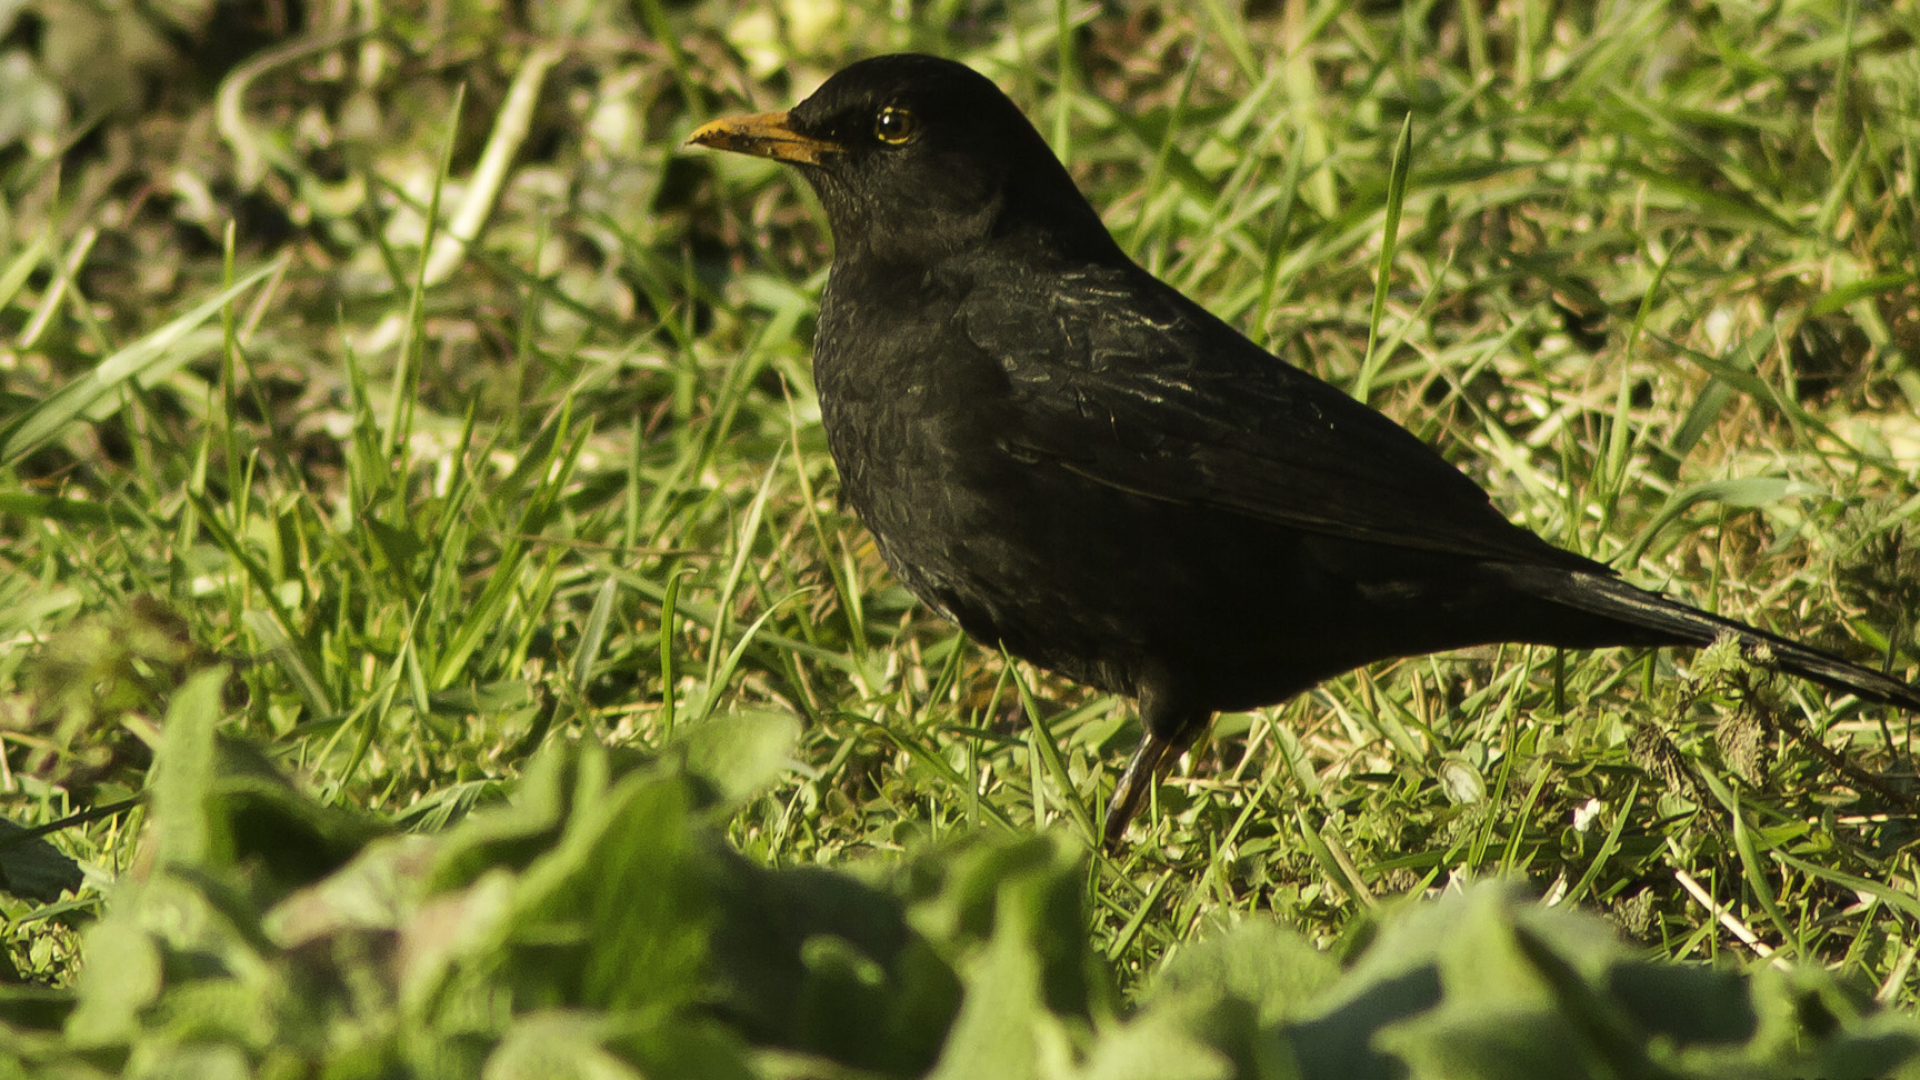 Common Blackbird, Playful hopping, Grassy landscapes, Bird watching, 1920x1080 Full HD Desktop